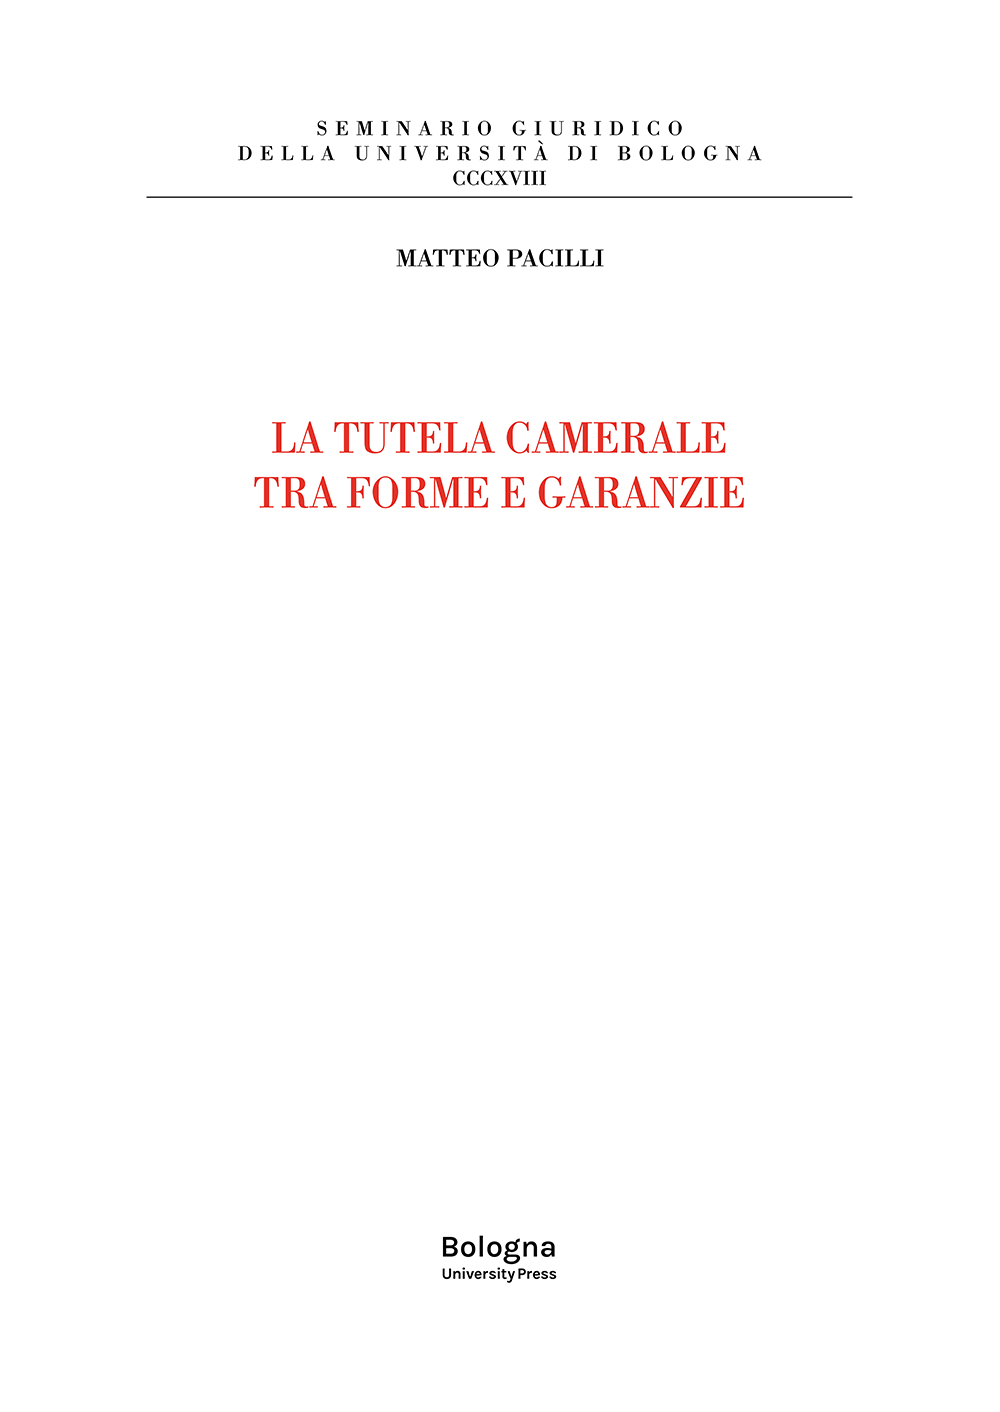 La tutela camerale fra forme e garanzie - Bologna University Press